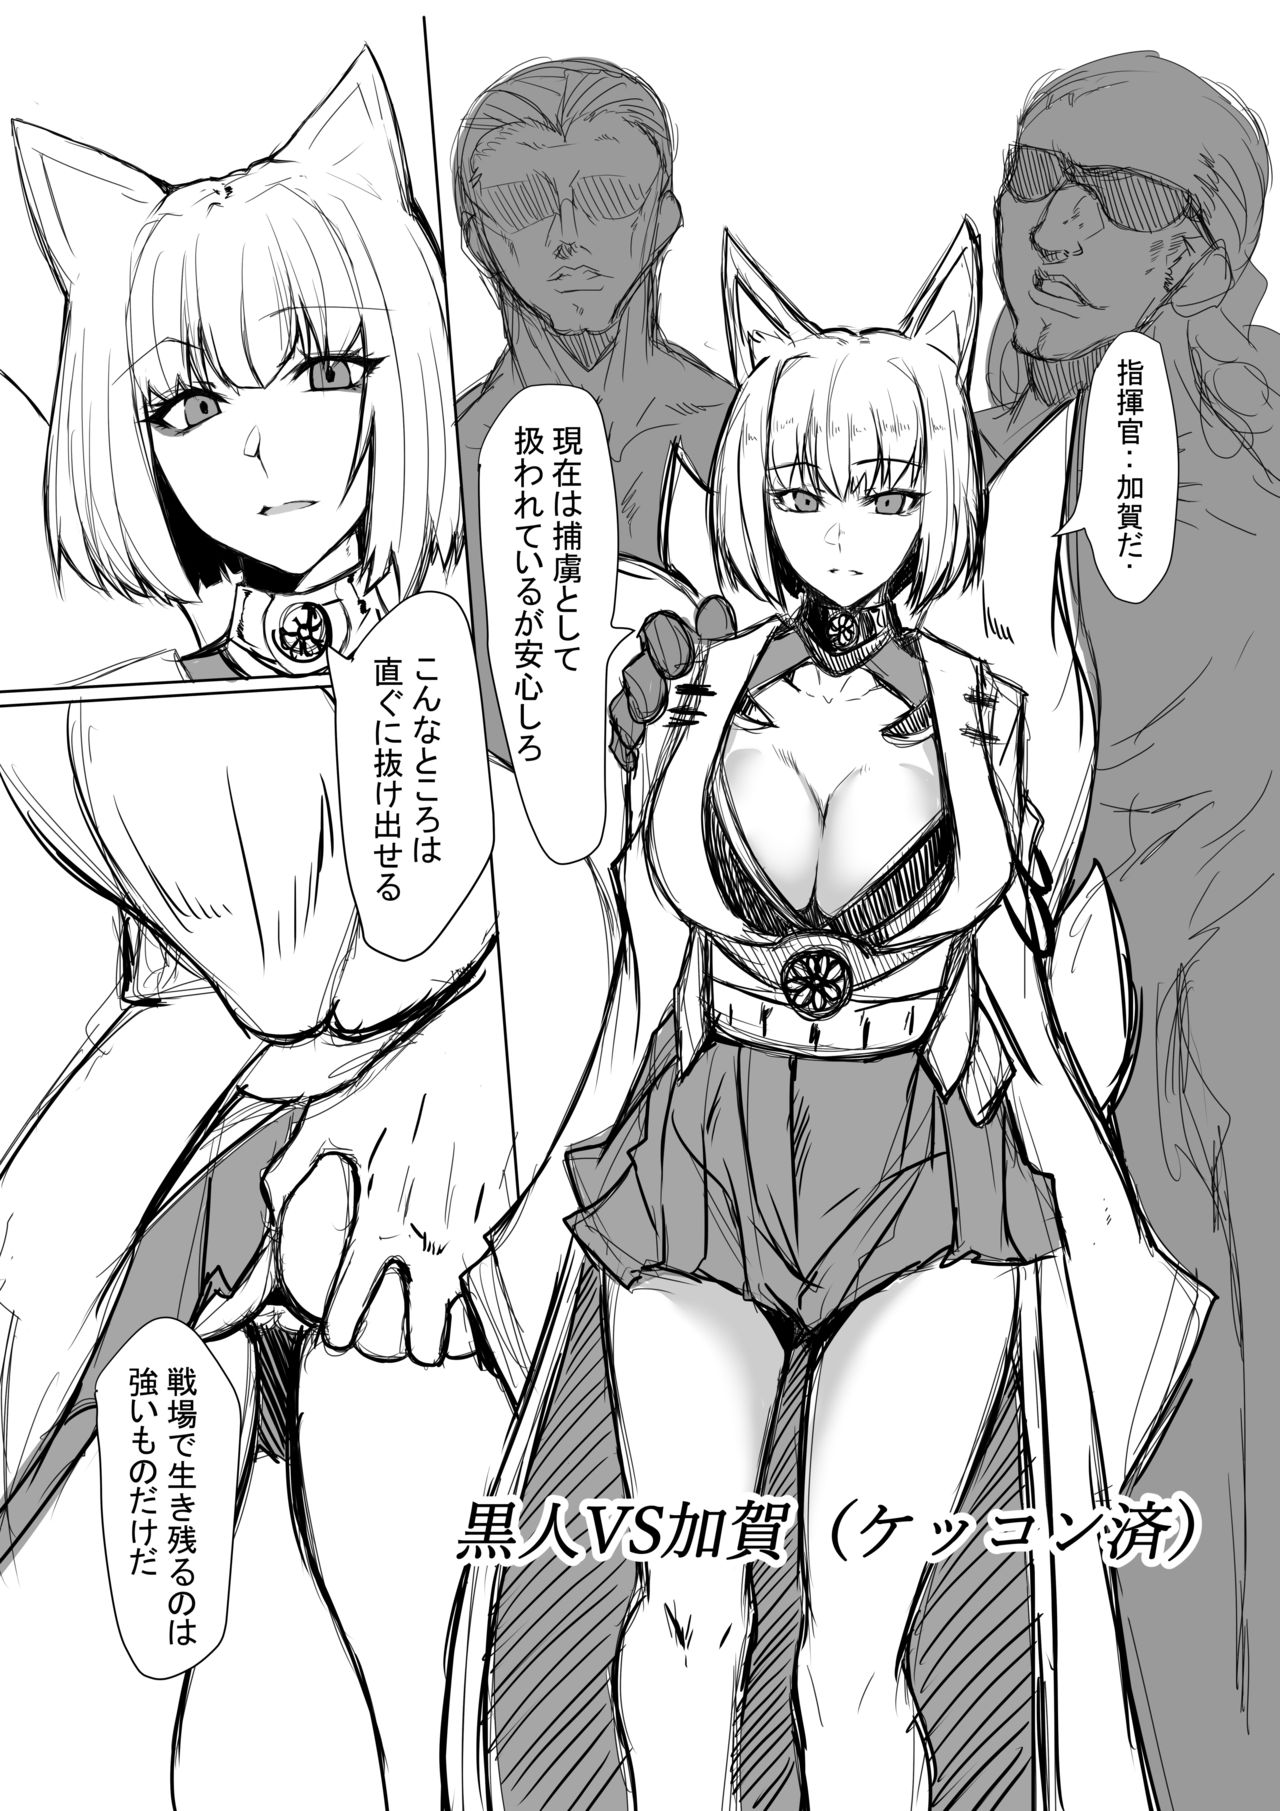 [GGGG] Kaga-san (Azur Lane) page 1 full